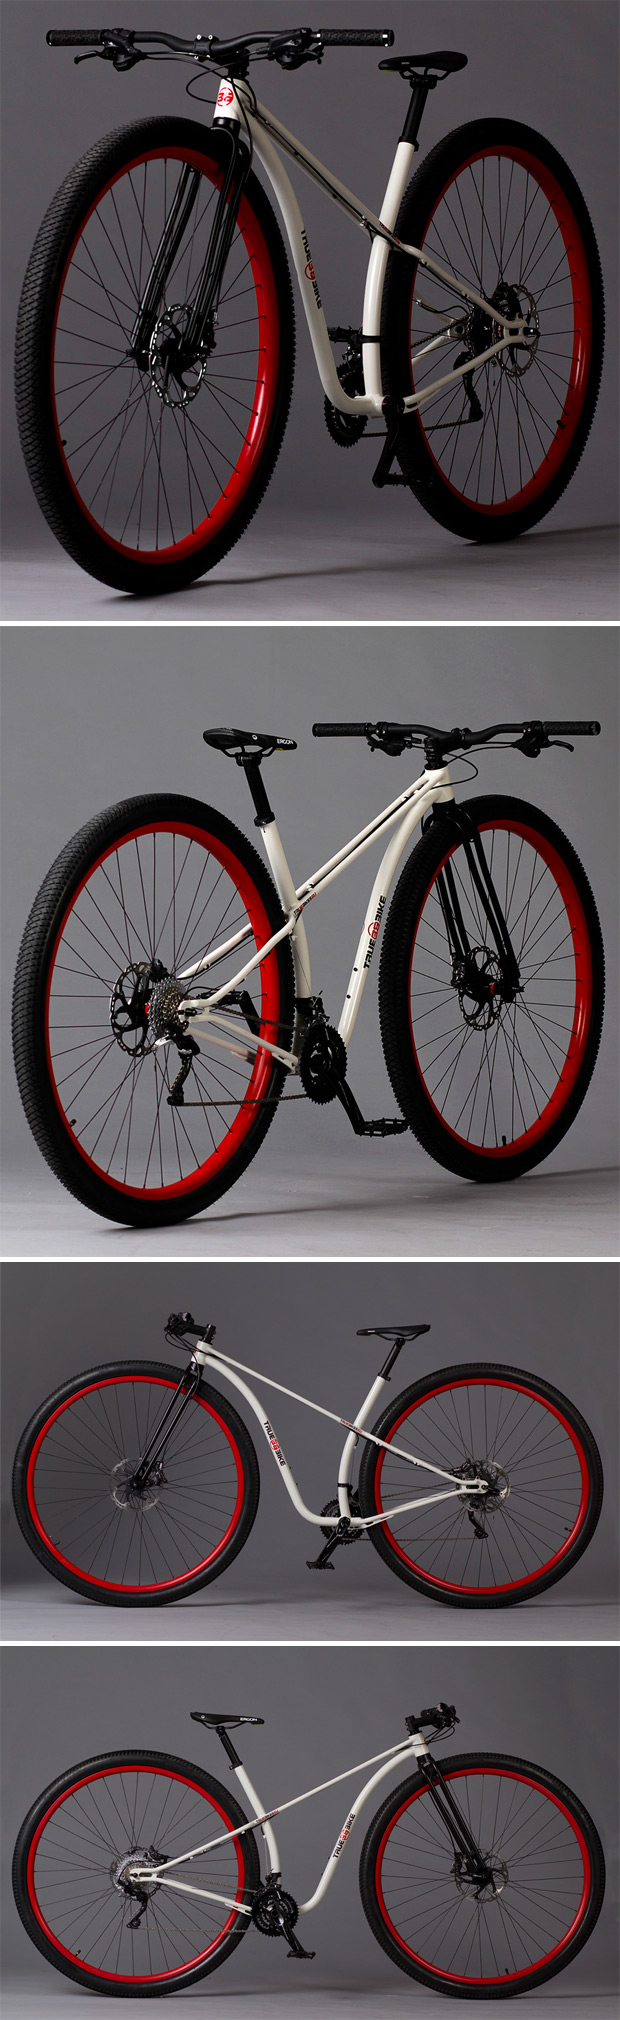 truebike-bicicletas-36-pulgadas-1.jpg